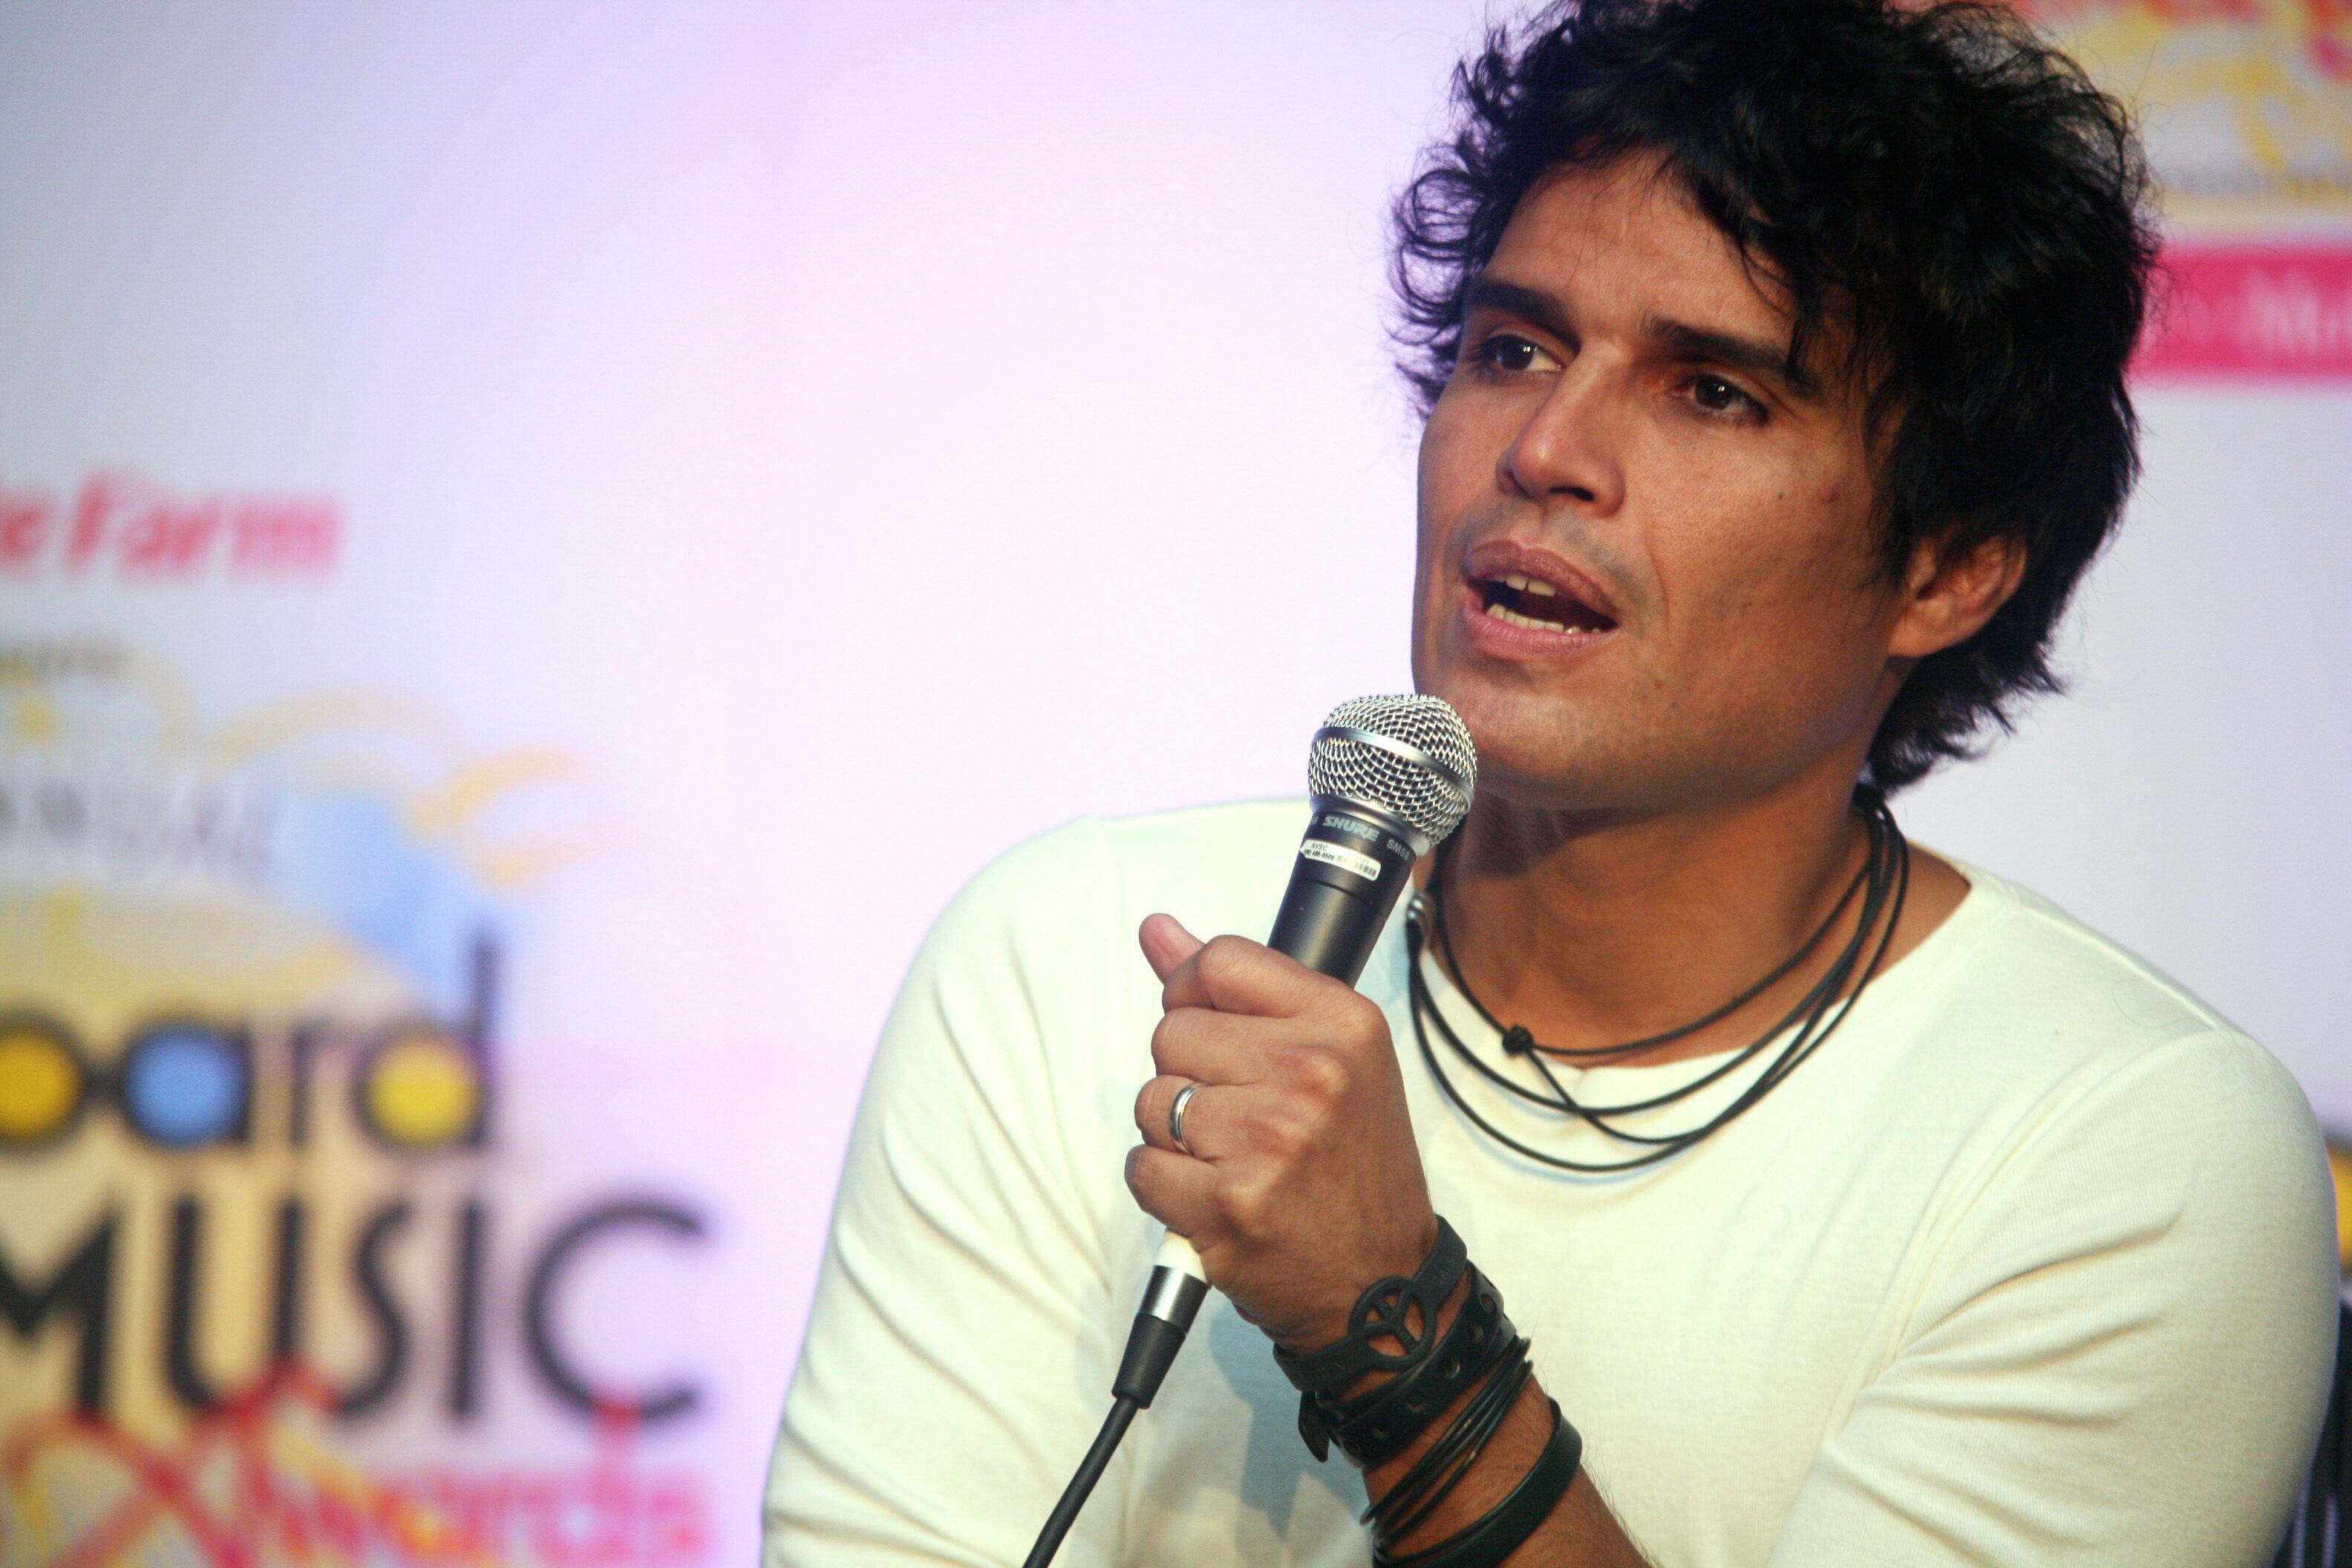 Fotografía de archivo fechada el 28 de abril de 2010 que muestra al cantante peruano Pedro Suárez-Vertiz. EFE/THAIS LLORCA 